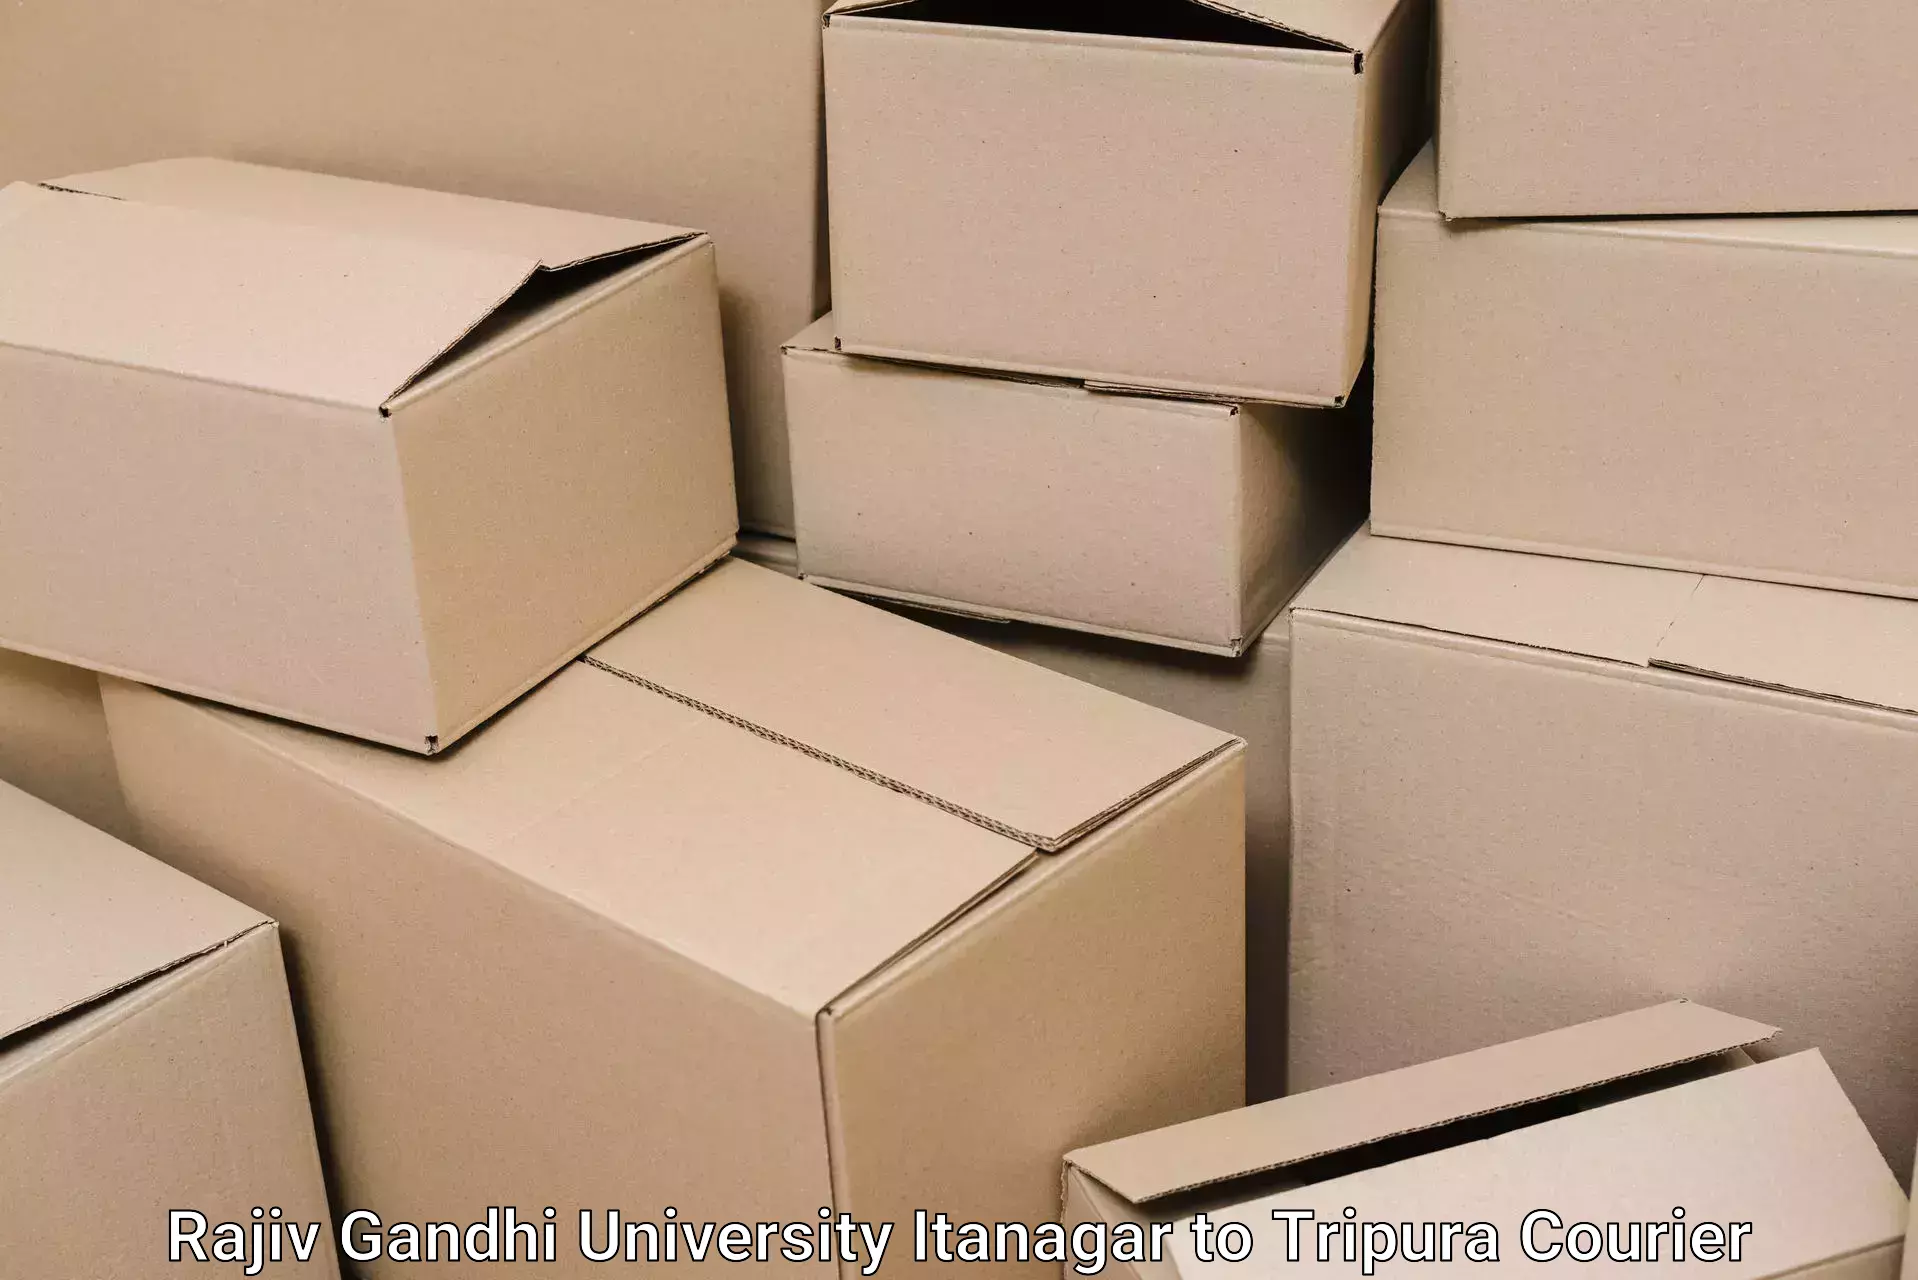 Furniture relocation experts Rajiv Gandhi University Itanagar to Bishalgarh